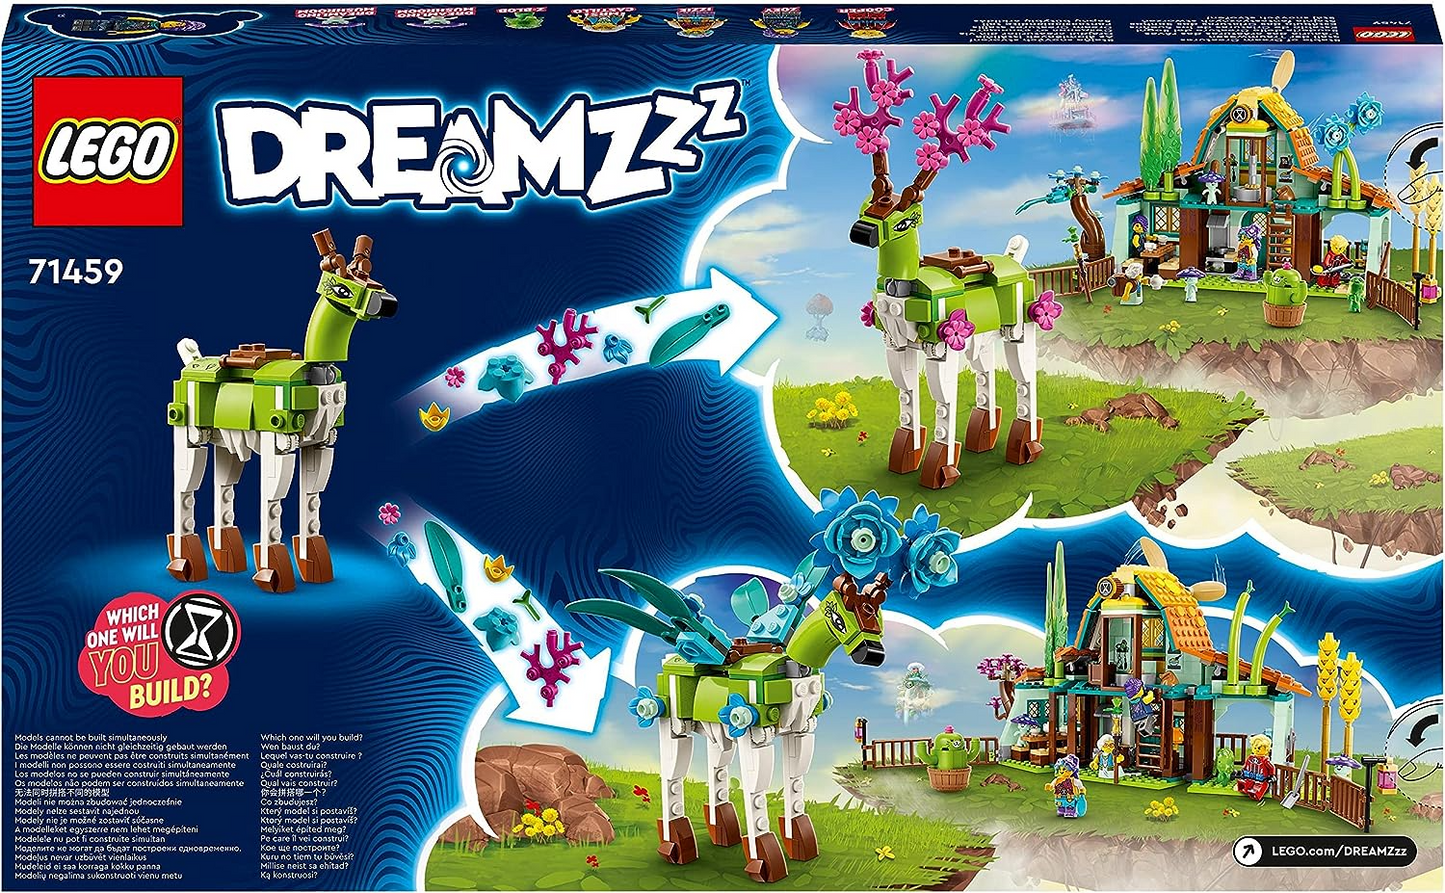 LEGO 71459 DREAMZzz Stable of Dream Creatures Set, brinquedo de fazenda de fantasia com figura de veado que pode ser construído de 2 maneiras, inclui 4 minifiguras de programas de TV, conjunto de animais míticos para crianças, meninas, meninos